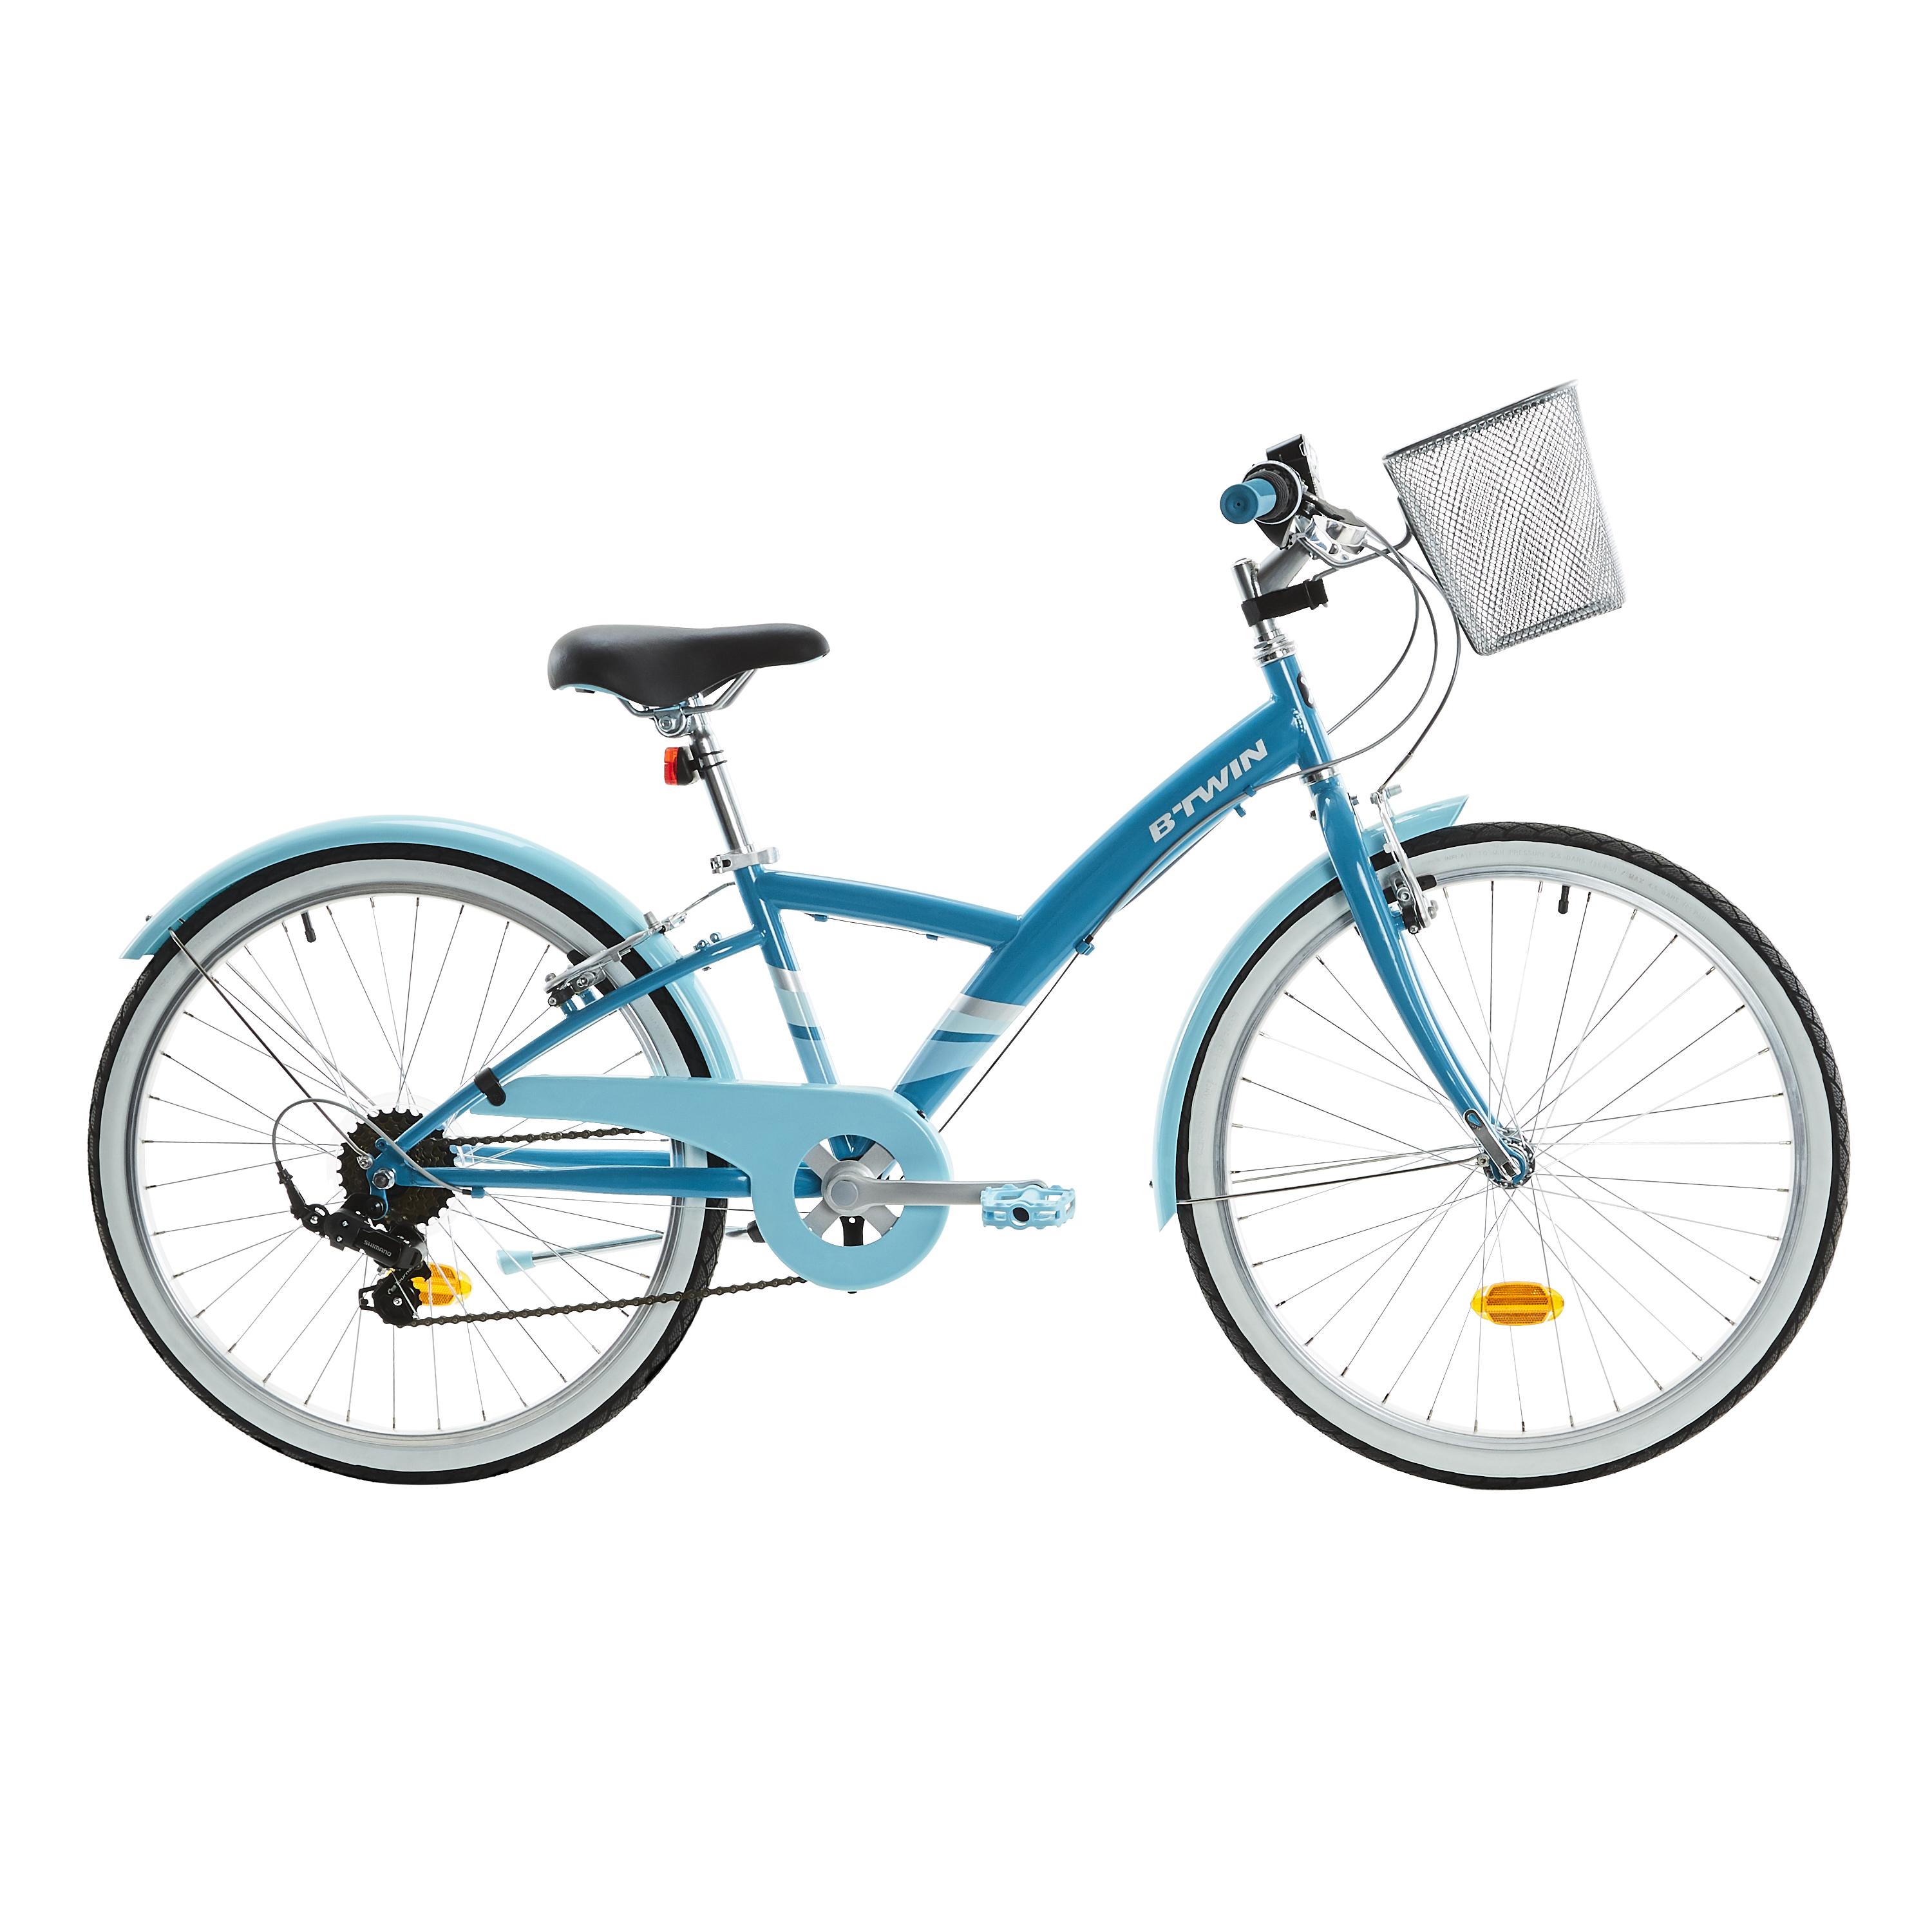 Bicicletă polivalentă Original 500 24”Albastru Copii 9-12 ani La Oferta Online BTWIN imagine La Oferta Online